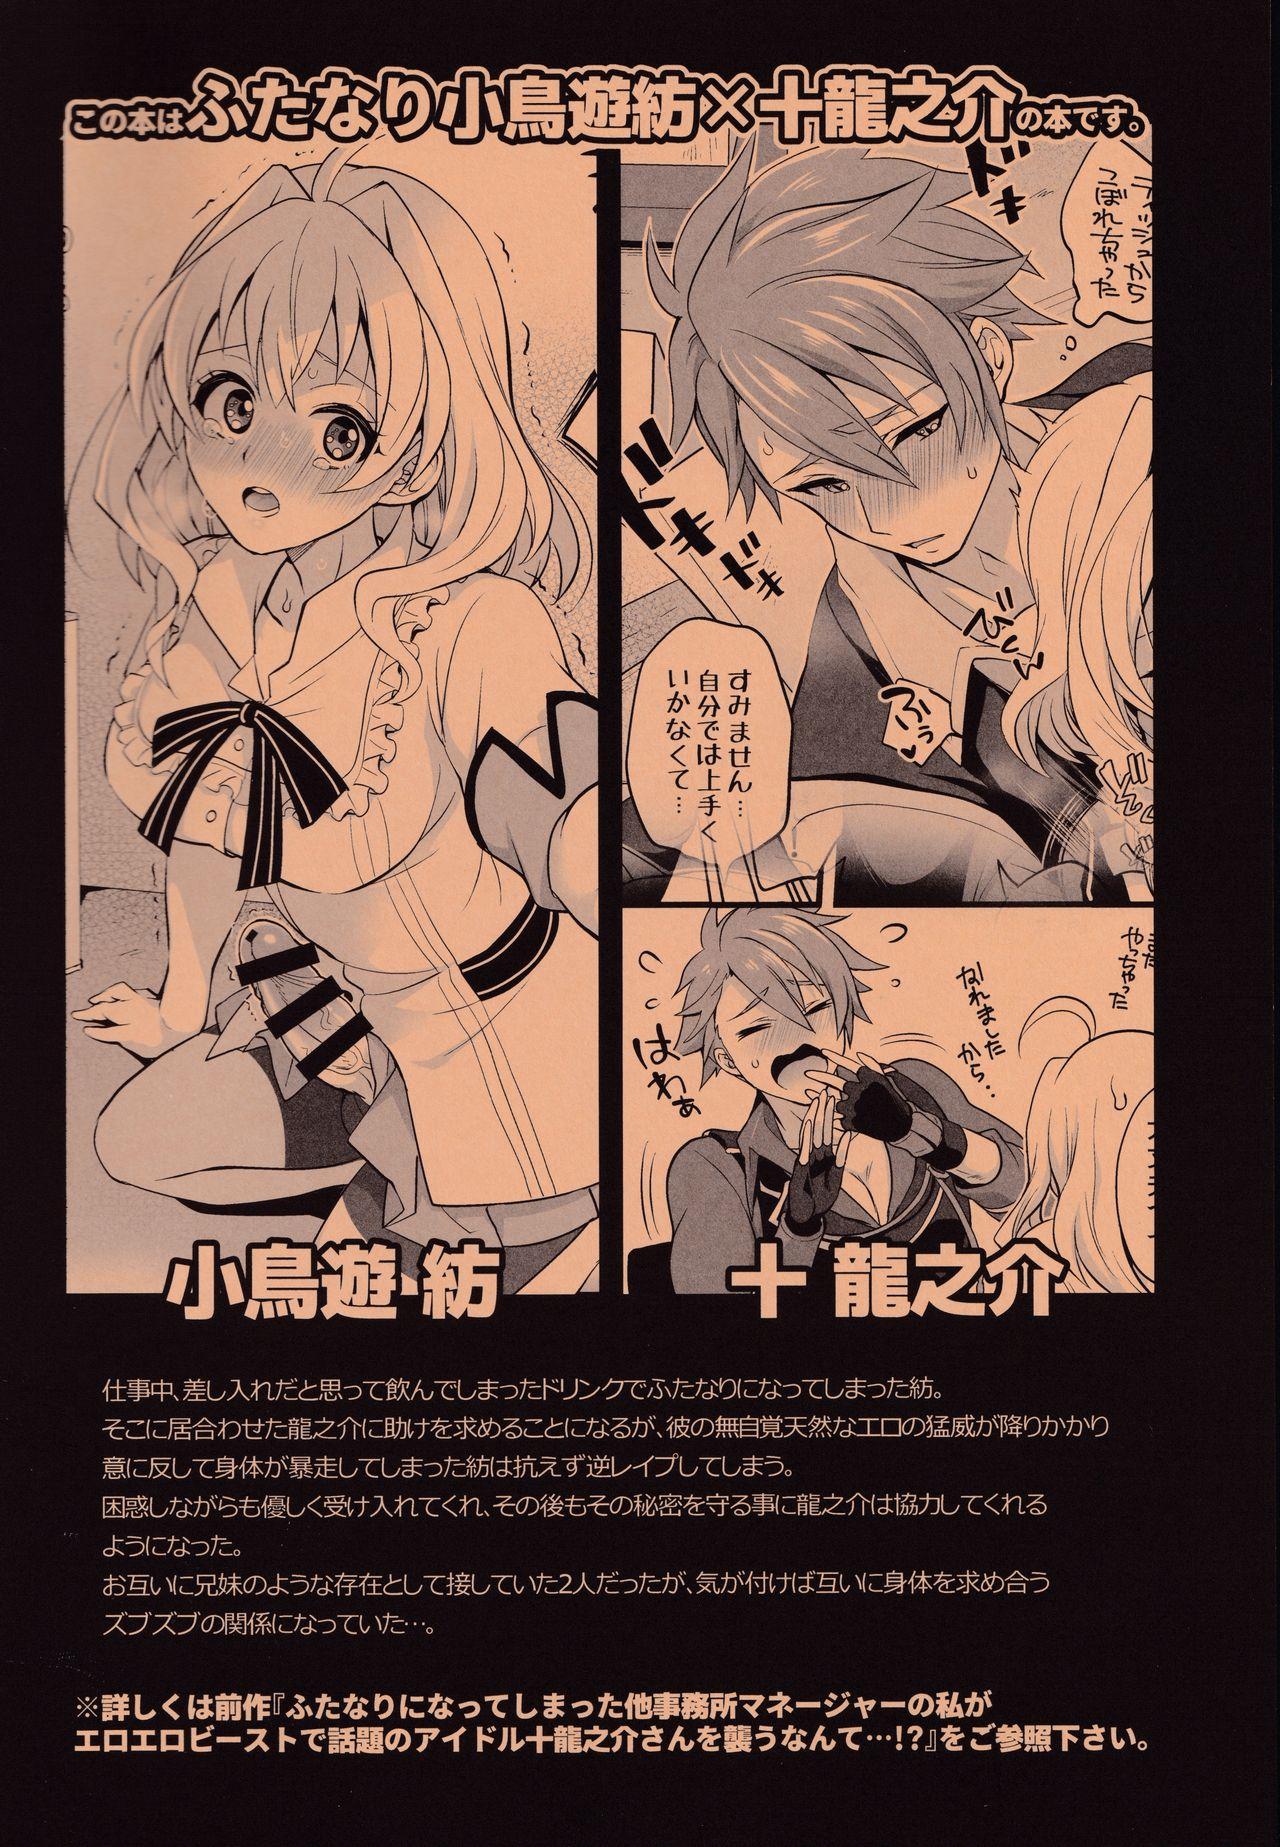 Atm Watashi no Ochinchin ga Amaeta Gatterun desu! - Idolish7 Gritona - Page 2